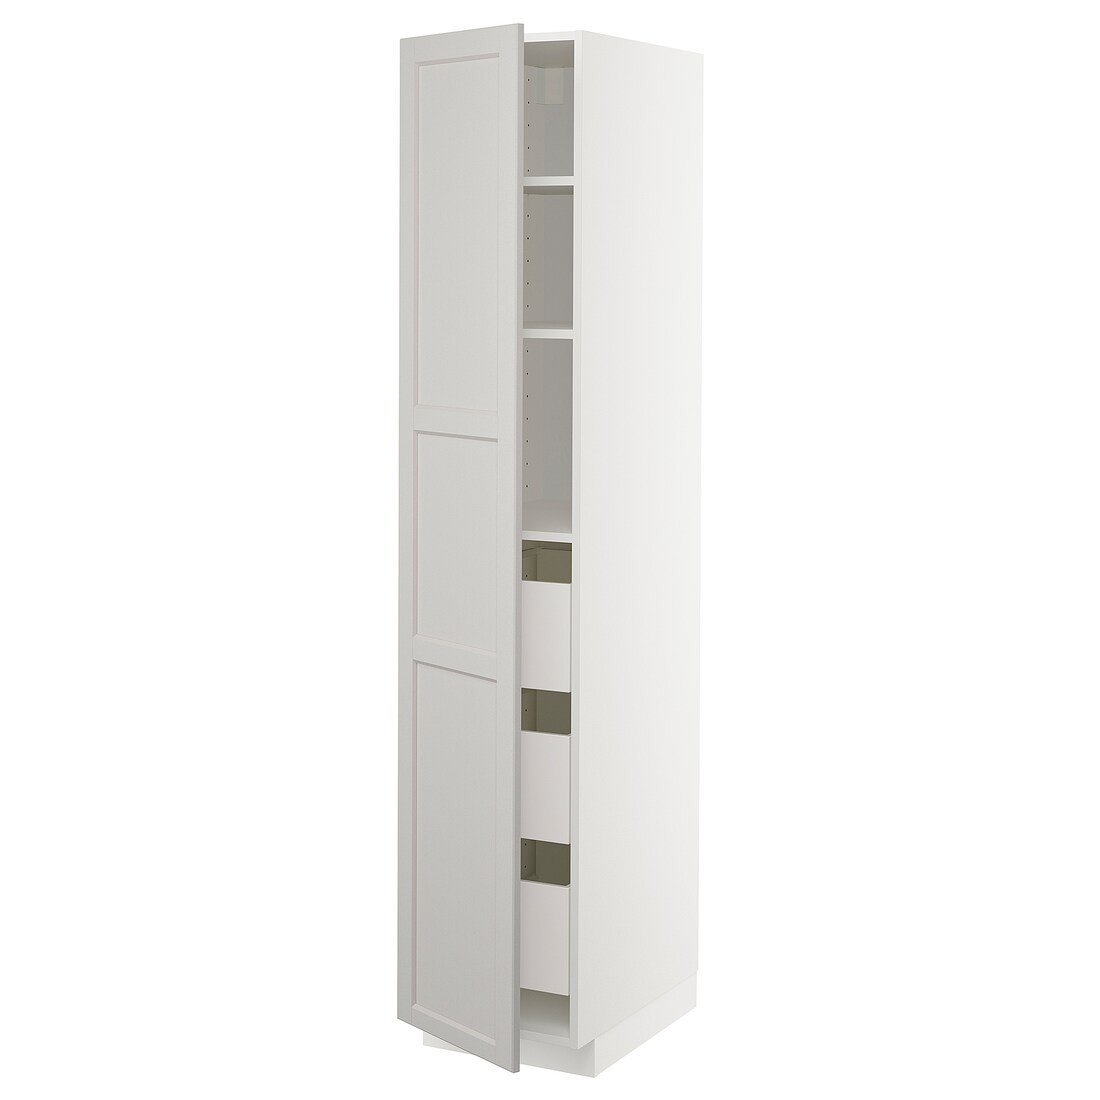 METOD МЕТОД / MAXIMERA МАКСИМЕРА Шкаф высокий с ящиками, белый / Lerhyttan светло-серый, 40x60x200 см